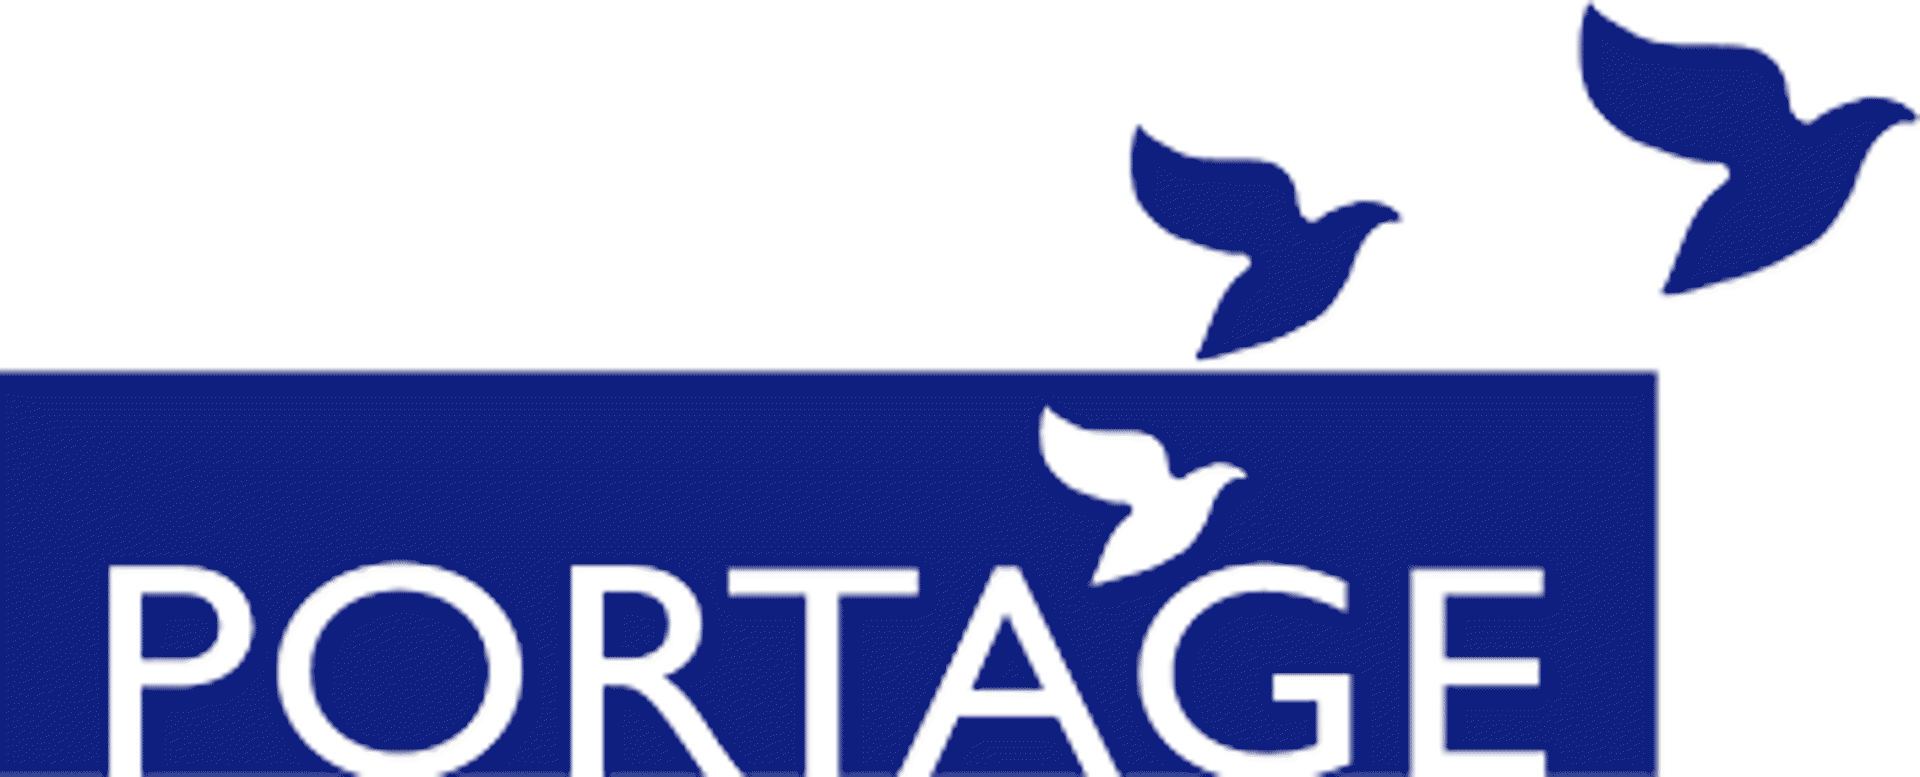 Portage Logo - Portage, Centre de jour (Montreal, QC)